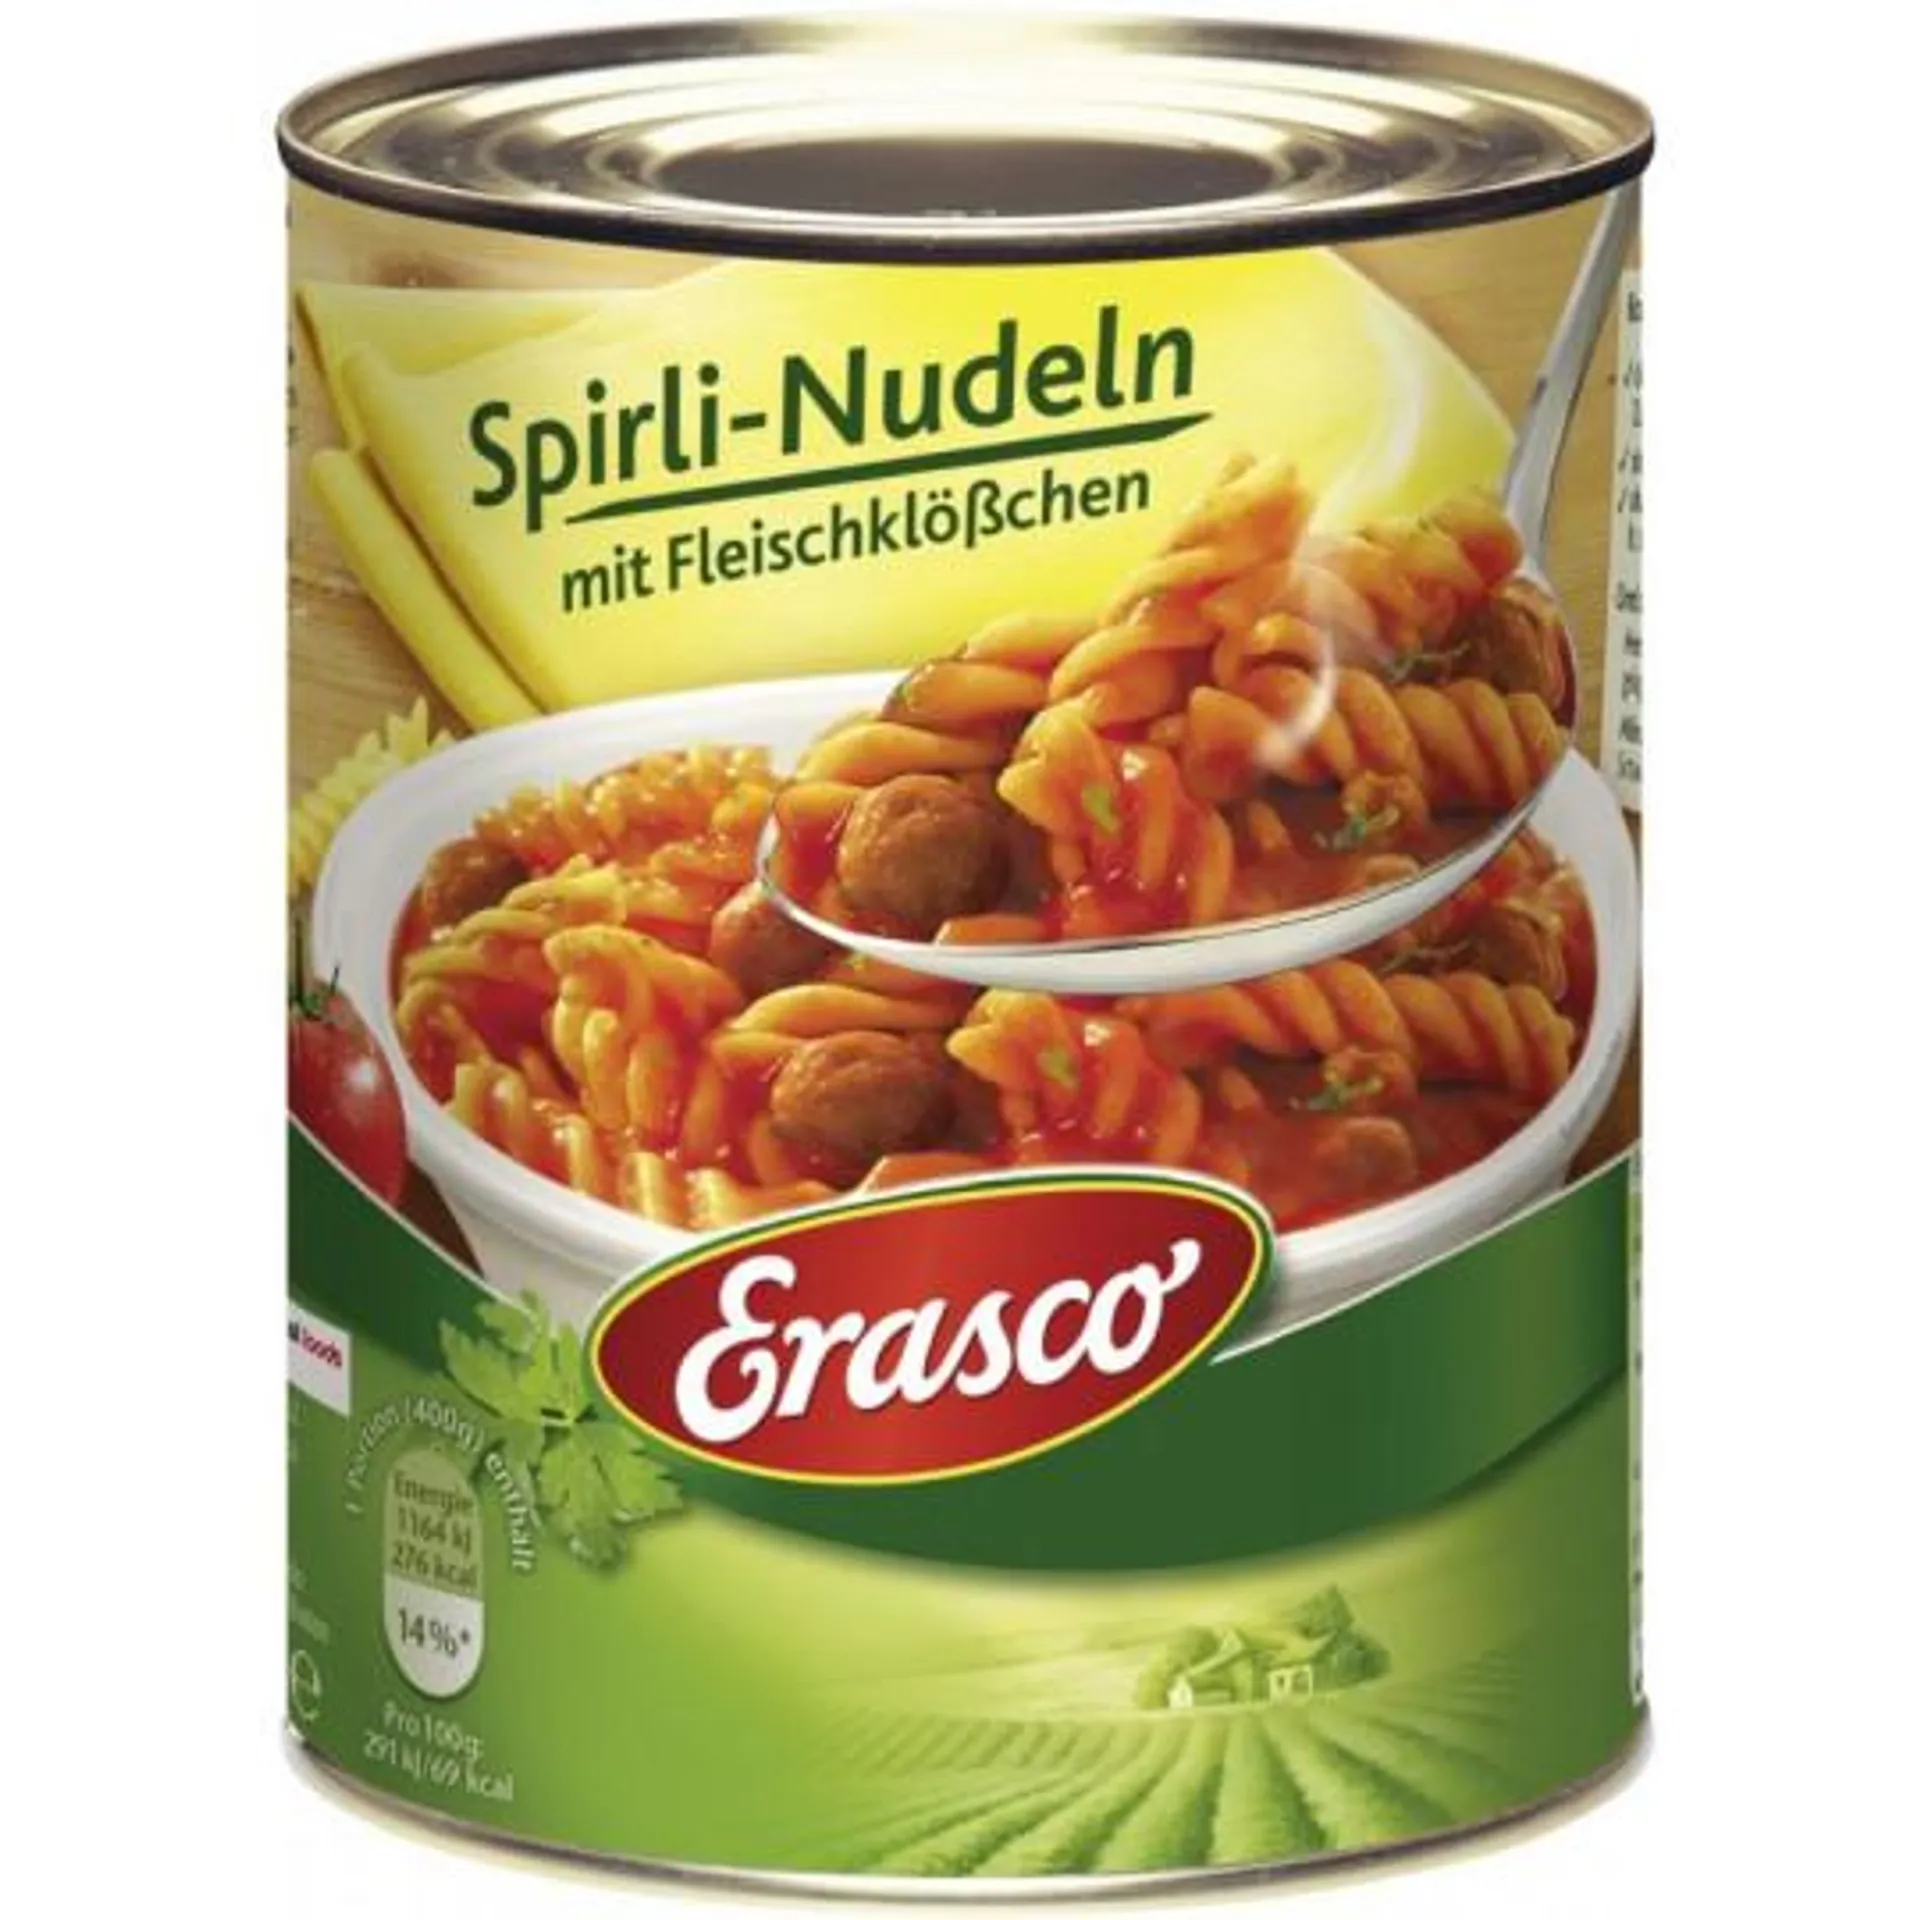 Erasco Spirli-Nudeln mit Fleischklößchen 800G